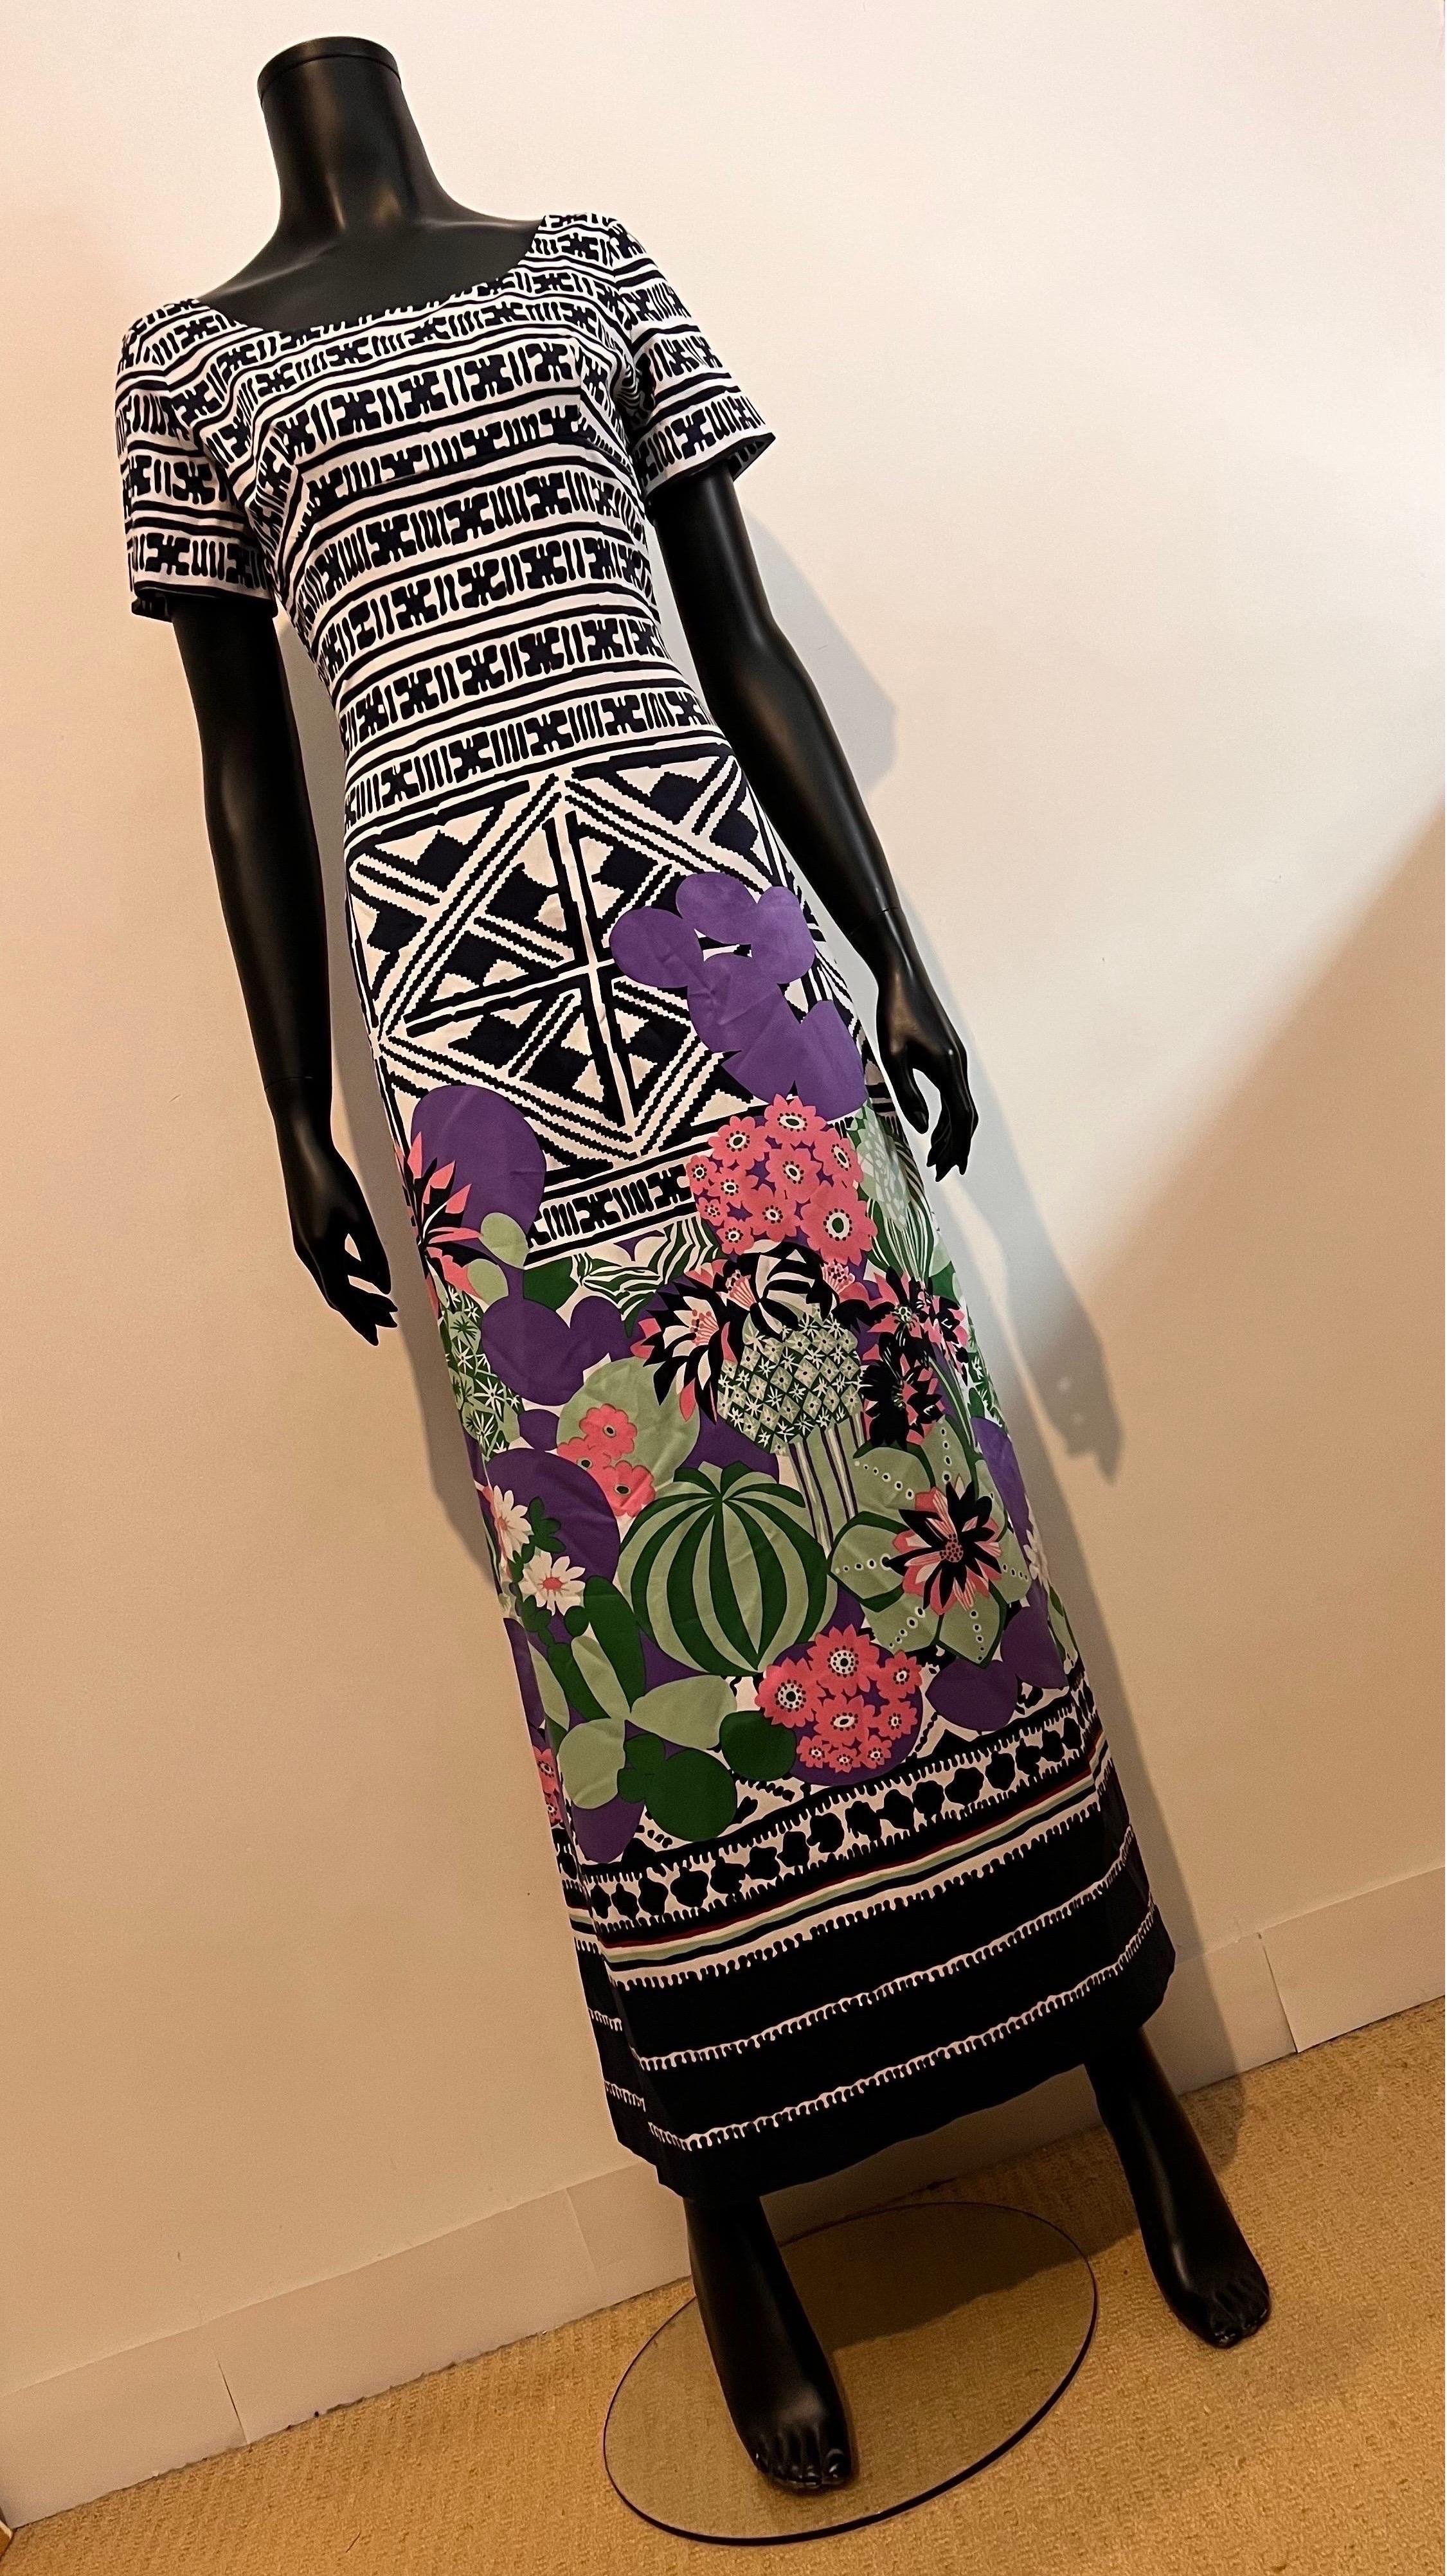 Magnifique exemple de robe d'été vintage à motifs abstraits/floraux de Lanvin Boutique des années 1970.

Une robe ravissante pour une fête de printemps/été ou pour un moment spécial en station balnéaire, avec des manches courtes et un décolleté